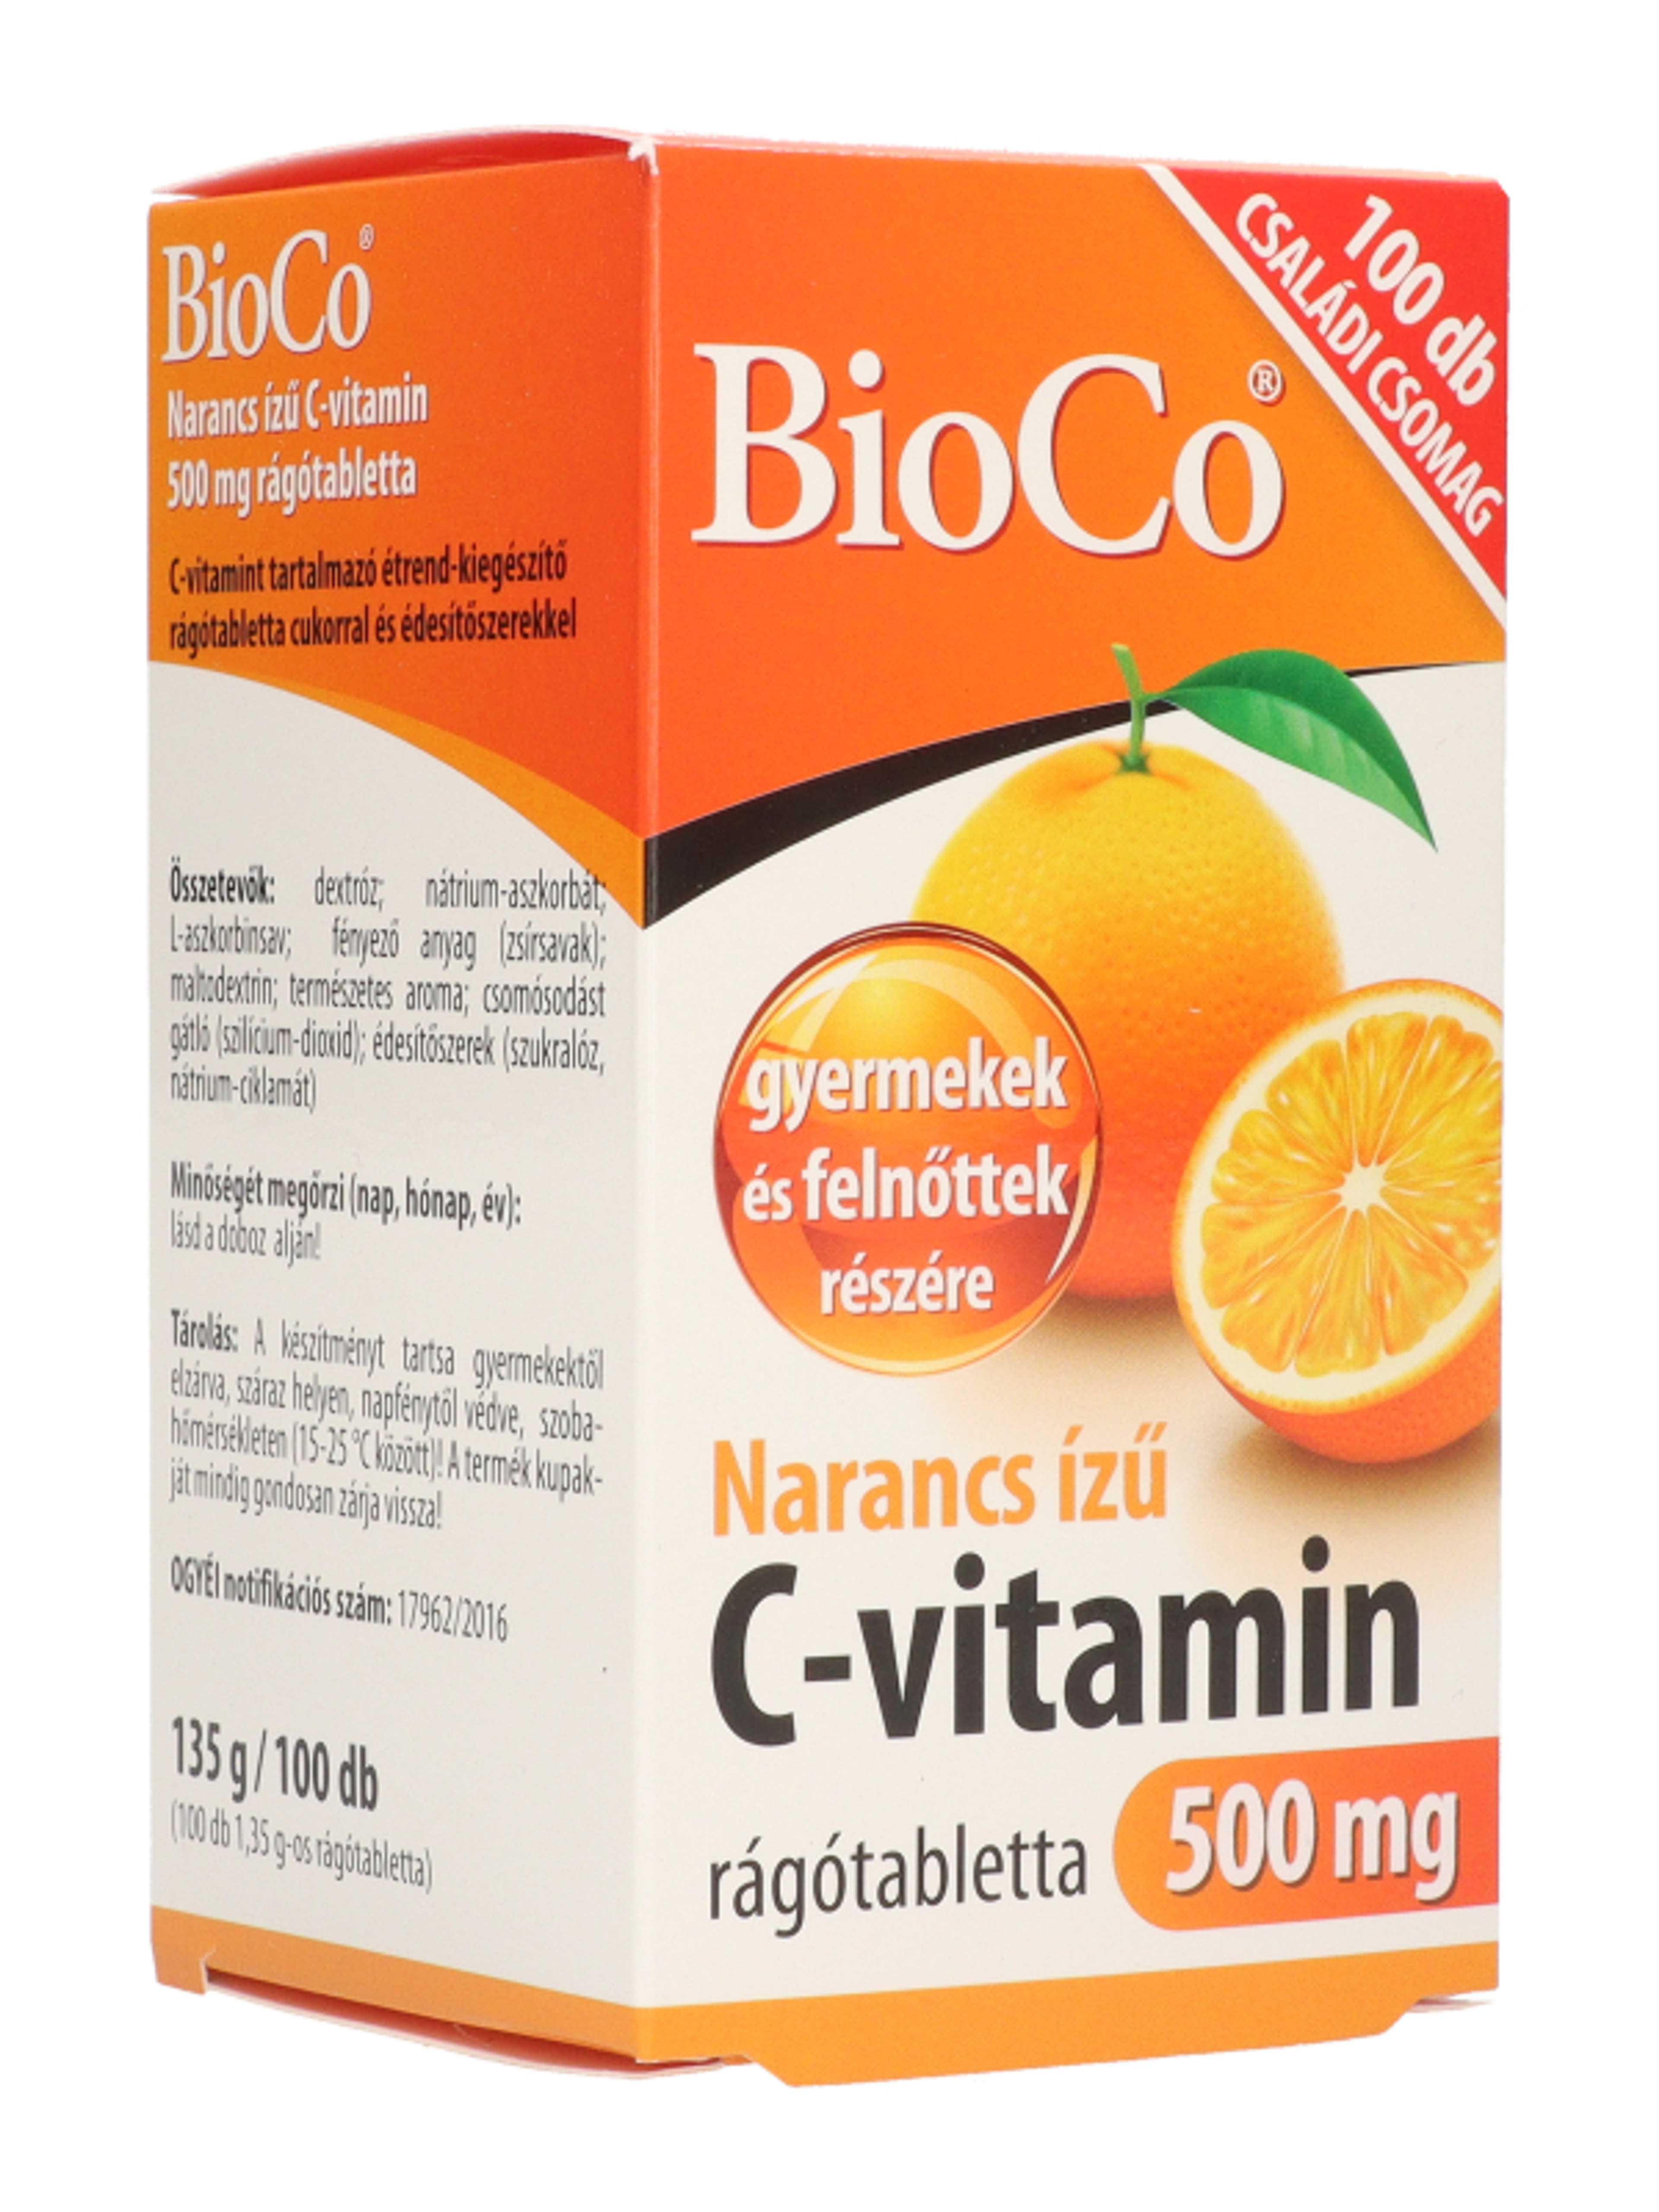 Bioco narancs ízű C-vitamin 500 mg rágótabletta - 100 db-6